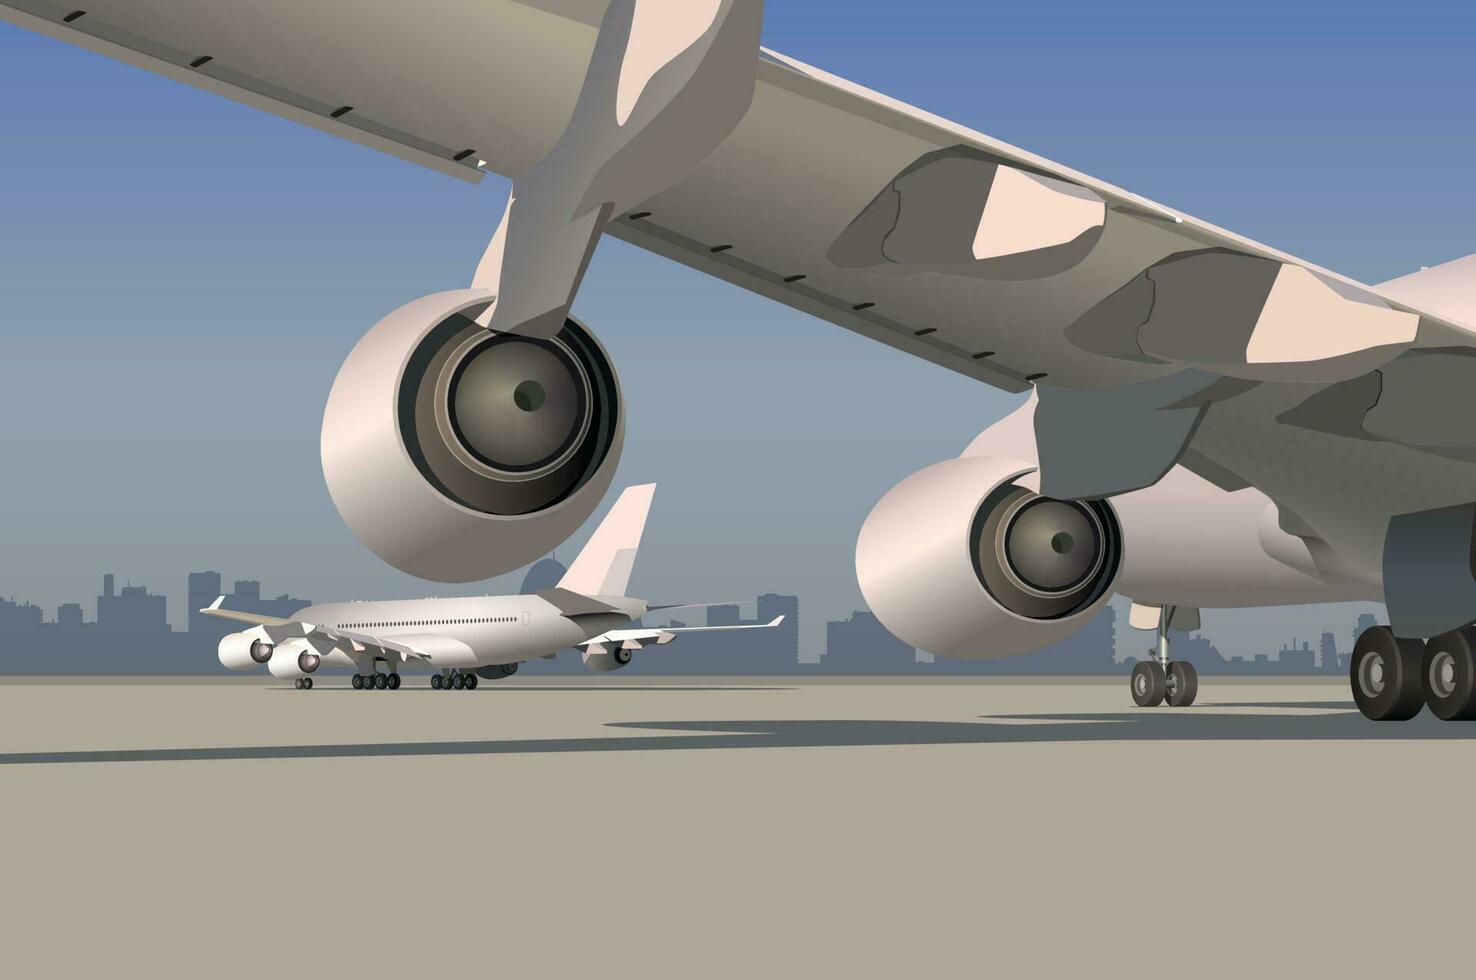 Flugzeug Flügel mit zwei Turbinen, Aussicht von Ein weiterer Flugzeug.Vektor. vektor